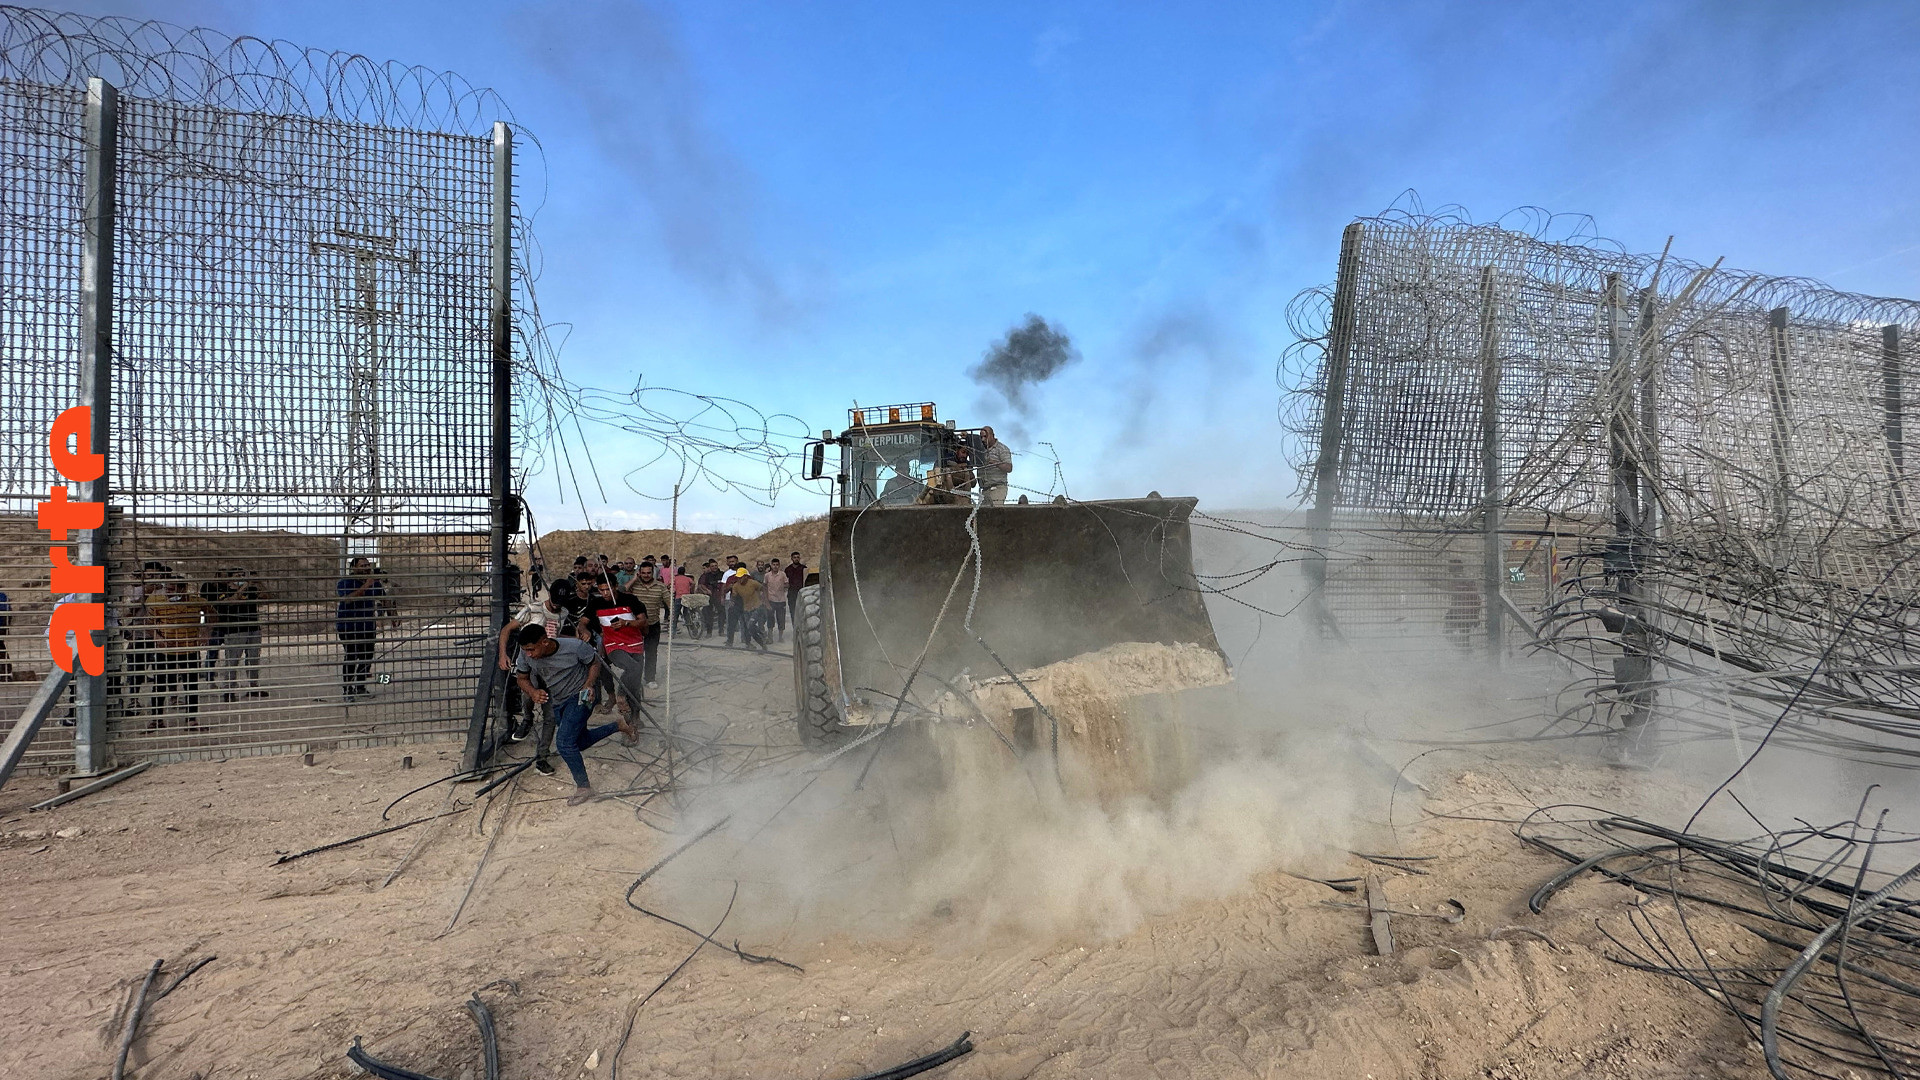 Le dessous des images - Gaza-Israël : le mur de fer et le bulldozer - Regarder l’émission complète | ARTE